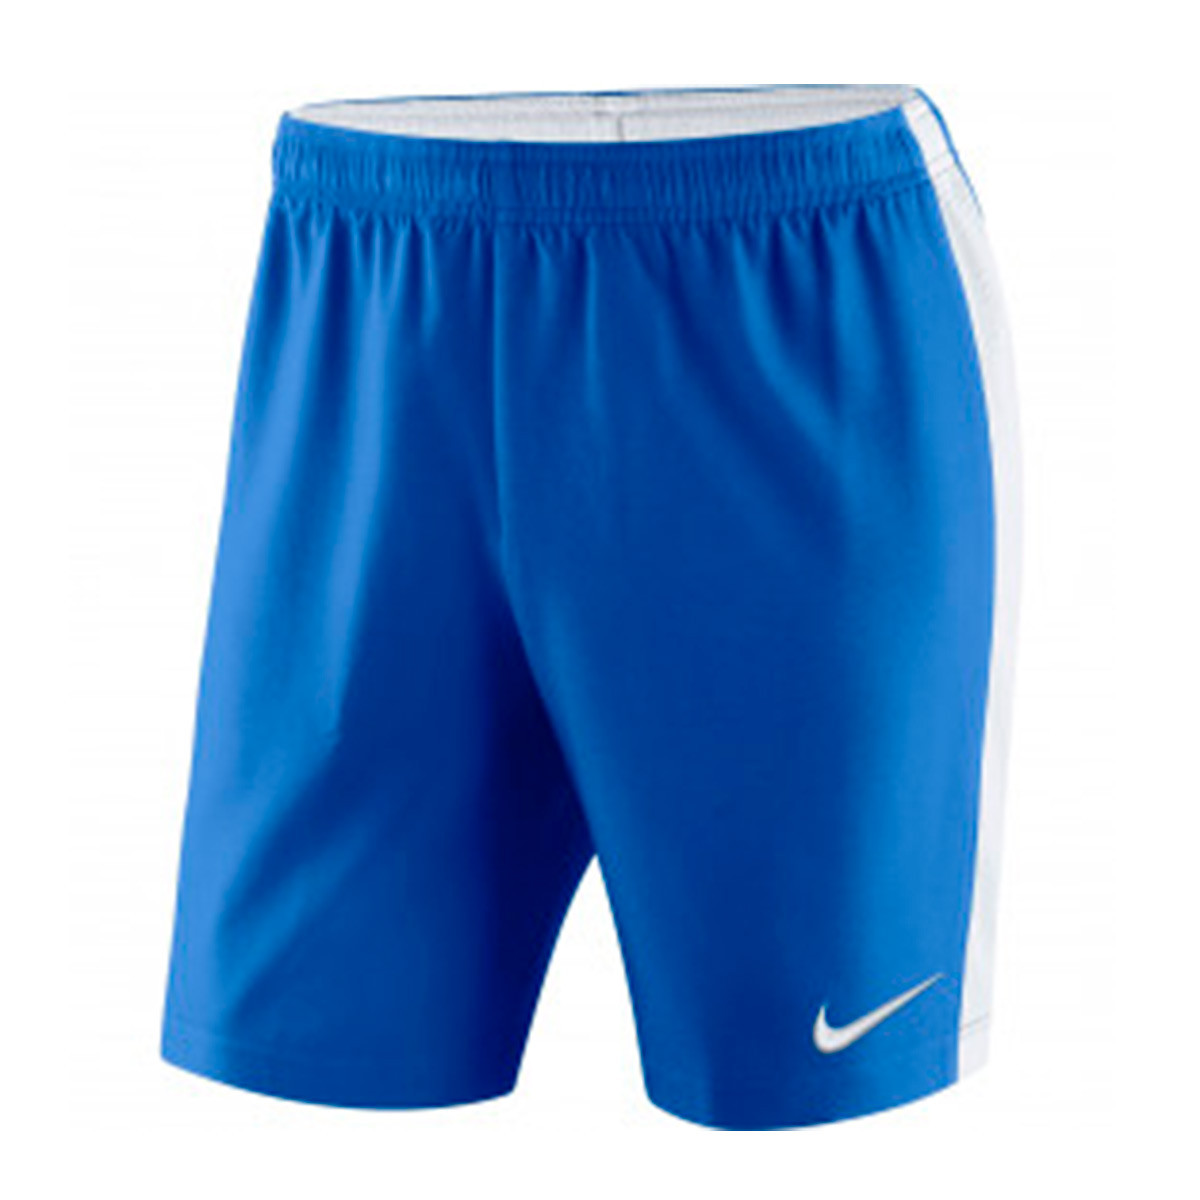 nike royal blue shorts